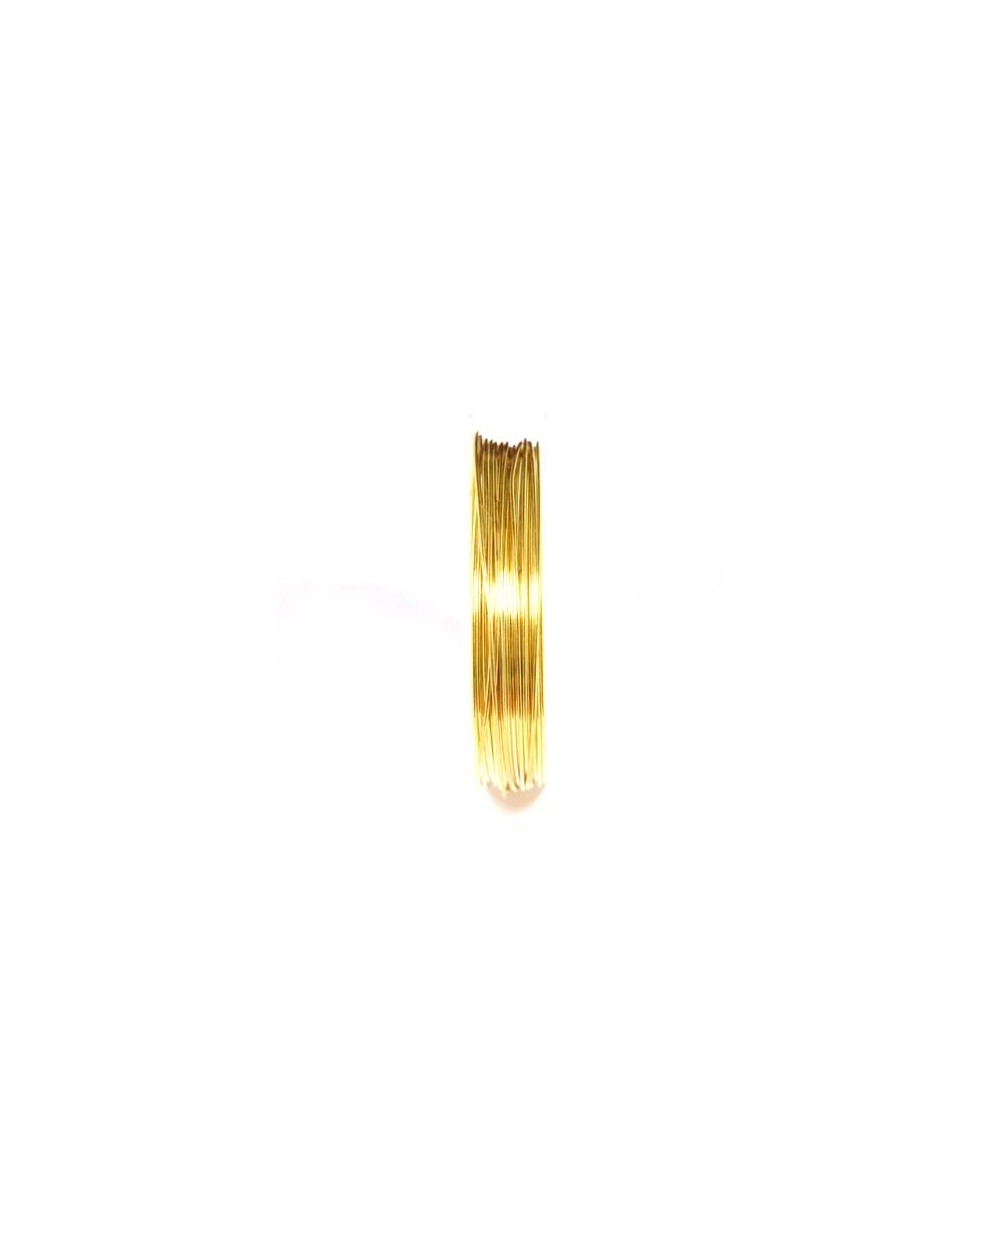 Varinė vielutė aukso sp. 0,8 mm - 5,3 metrai 